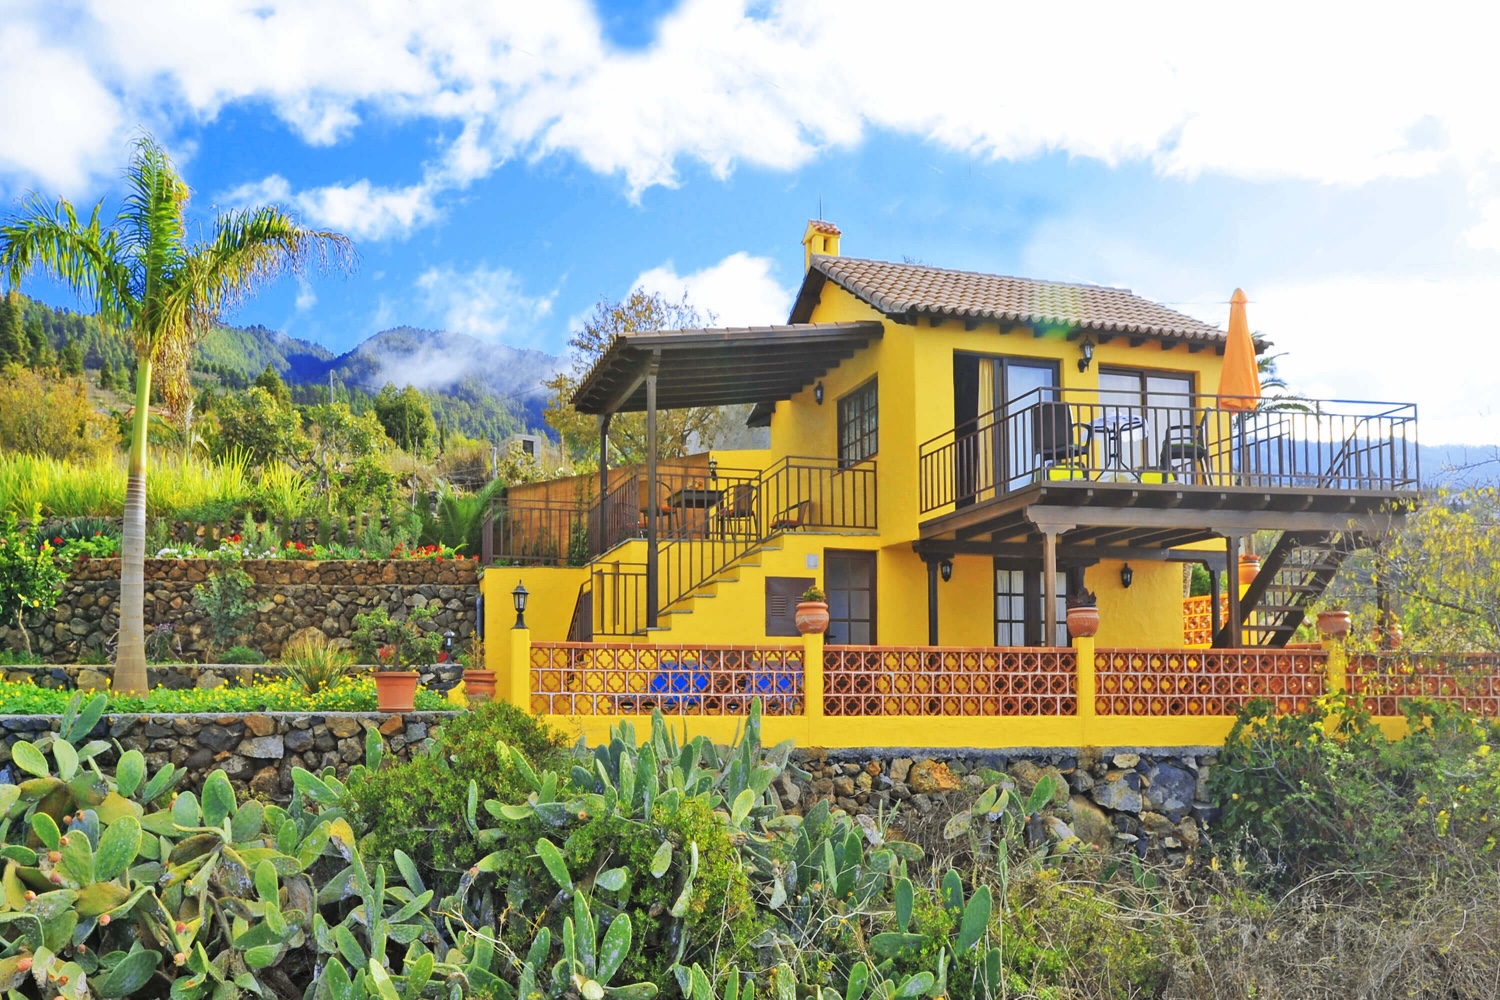 Maison de vacances idyllique avec une jolie terrasse pour profiter des magnifiques vues panoramiques de l'Atlantique et située sur une colline près du village de Tijarafe